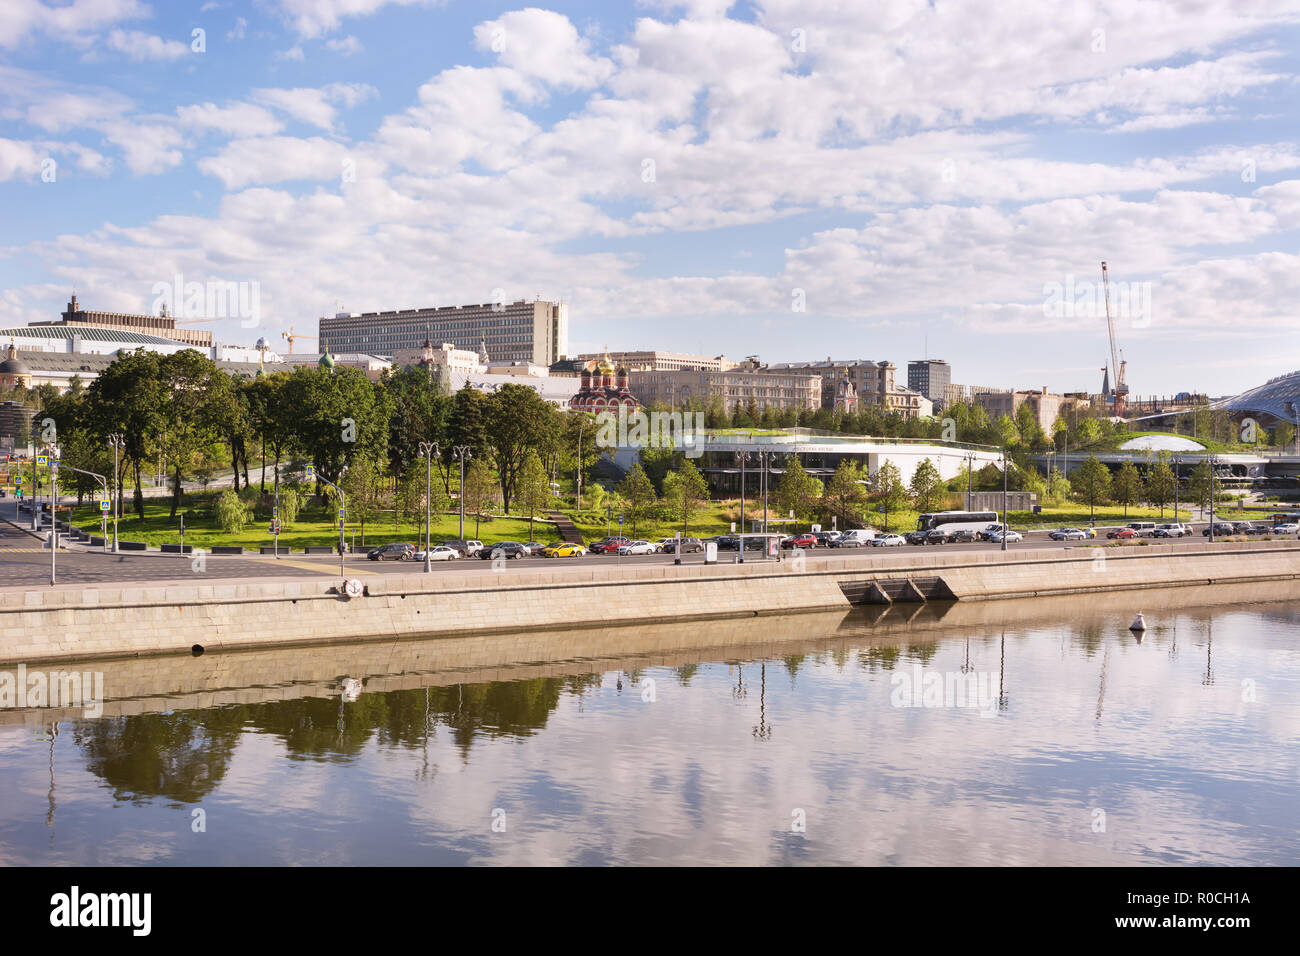 Moscou, Russie - 9 août 2018 : vue sur Park Zaryadye dans le centre de Moscou, Russie Banque D'Images